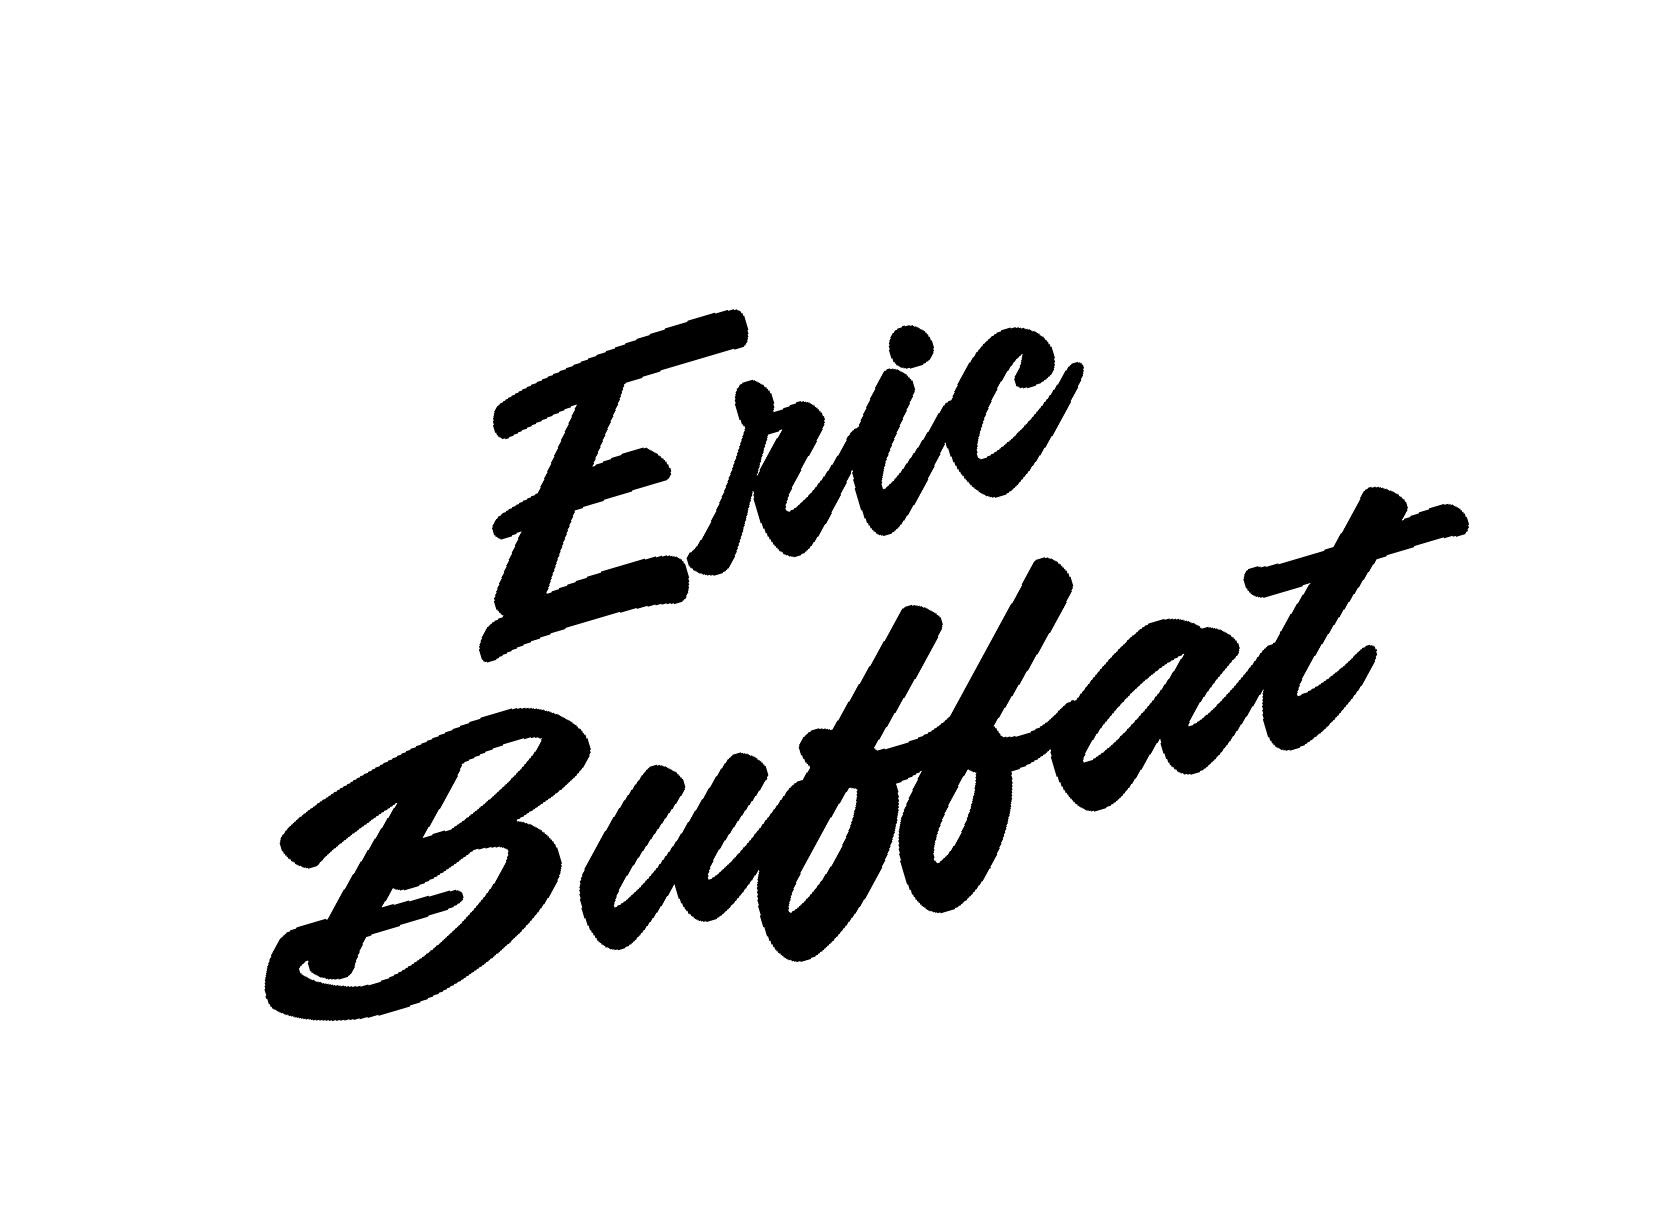 Eric Buffat